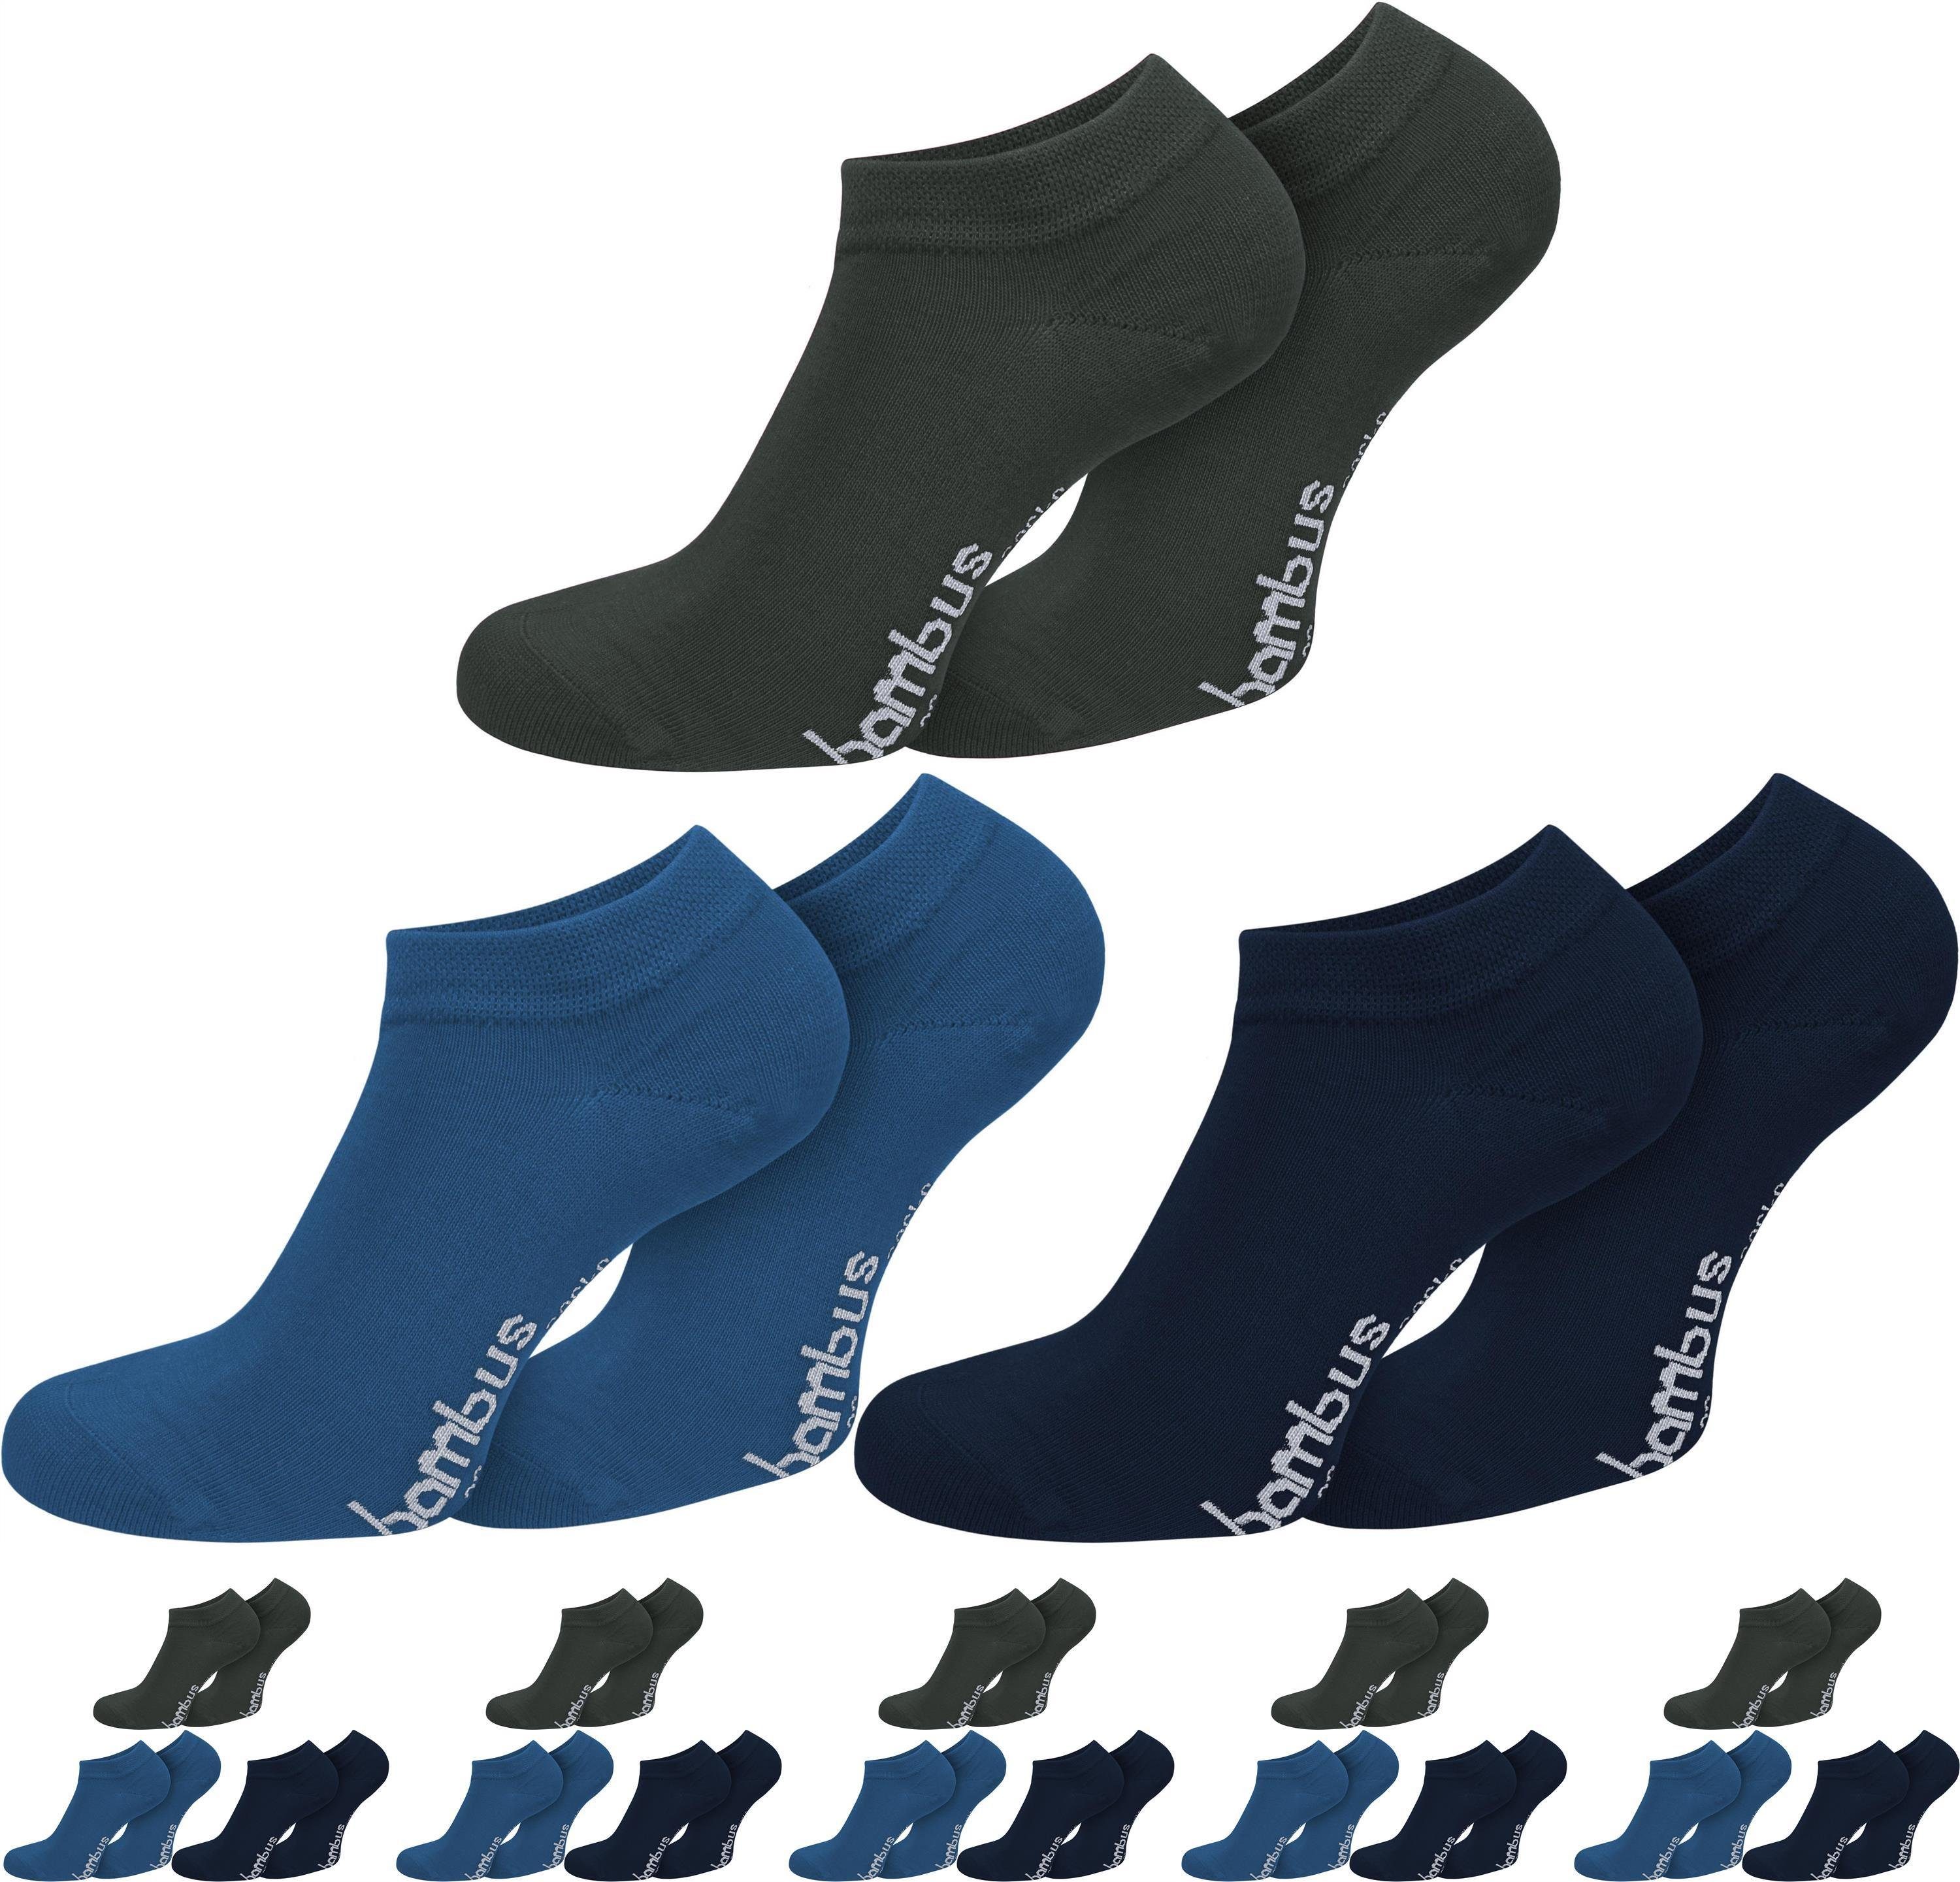 normani Sneakersocken 6 Paar Bambus-Gesundheitssocken Sneakers (6er-Set, 6 Paar) seidenweich durch Viskose Anthrazit/Blau/Marine